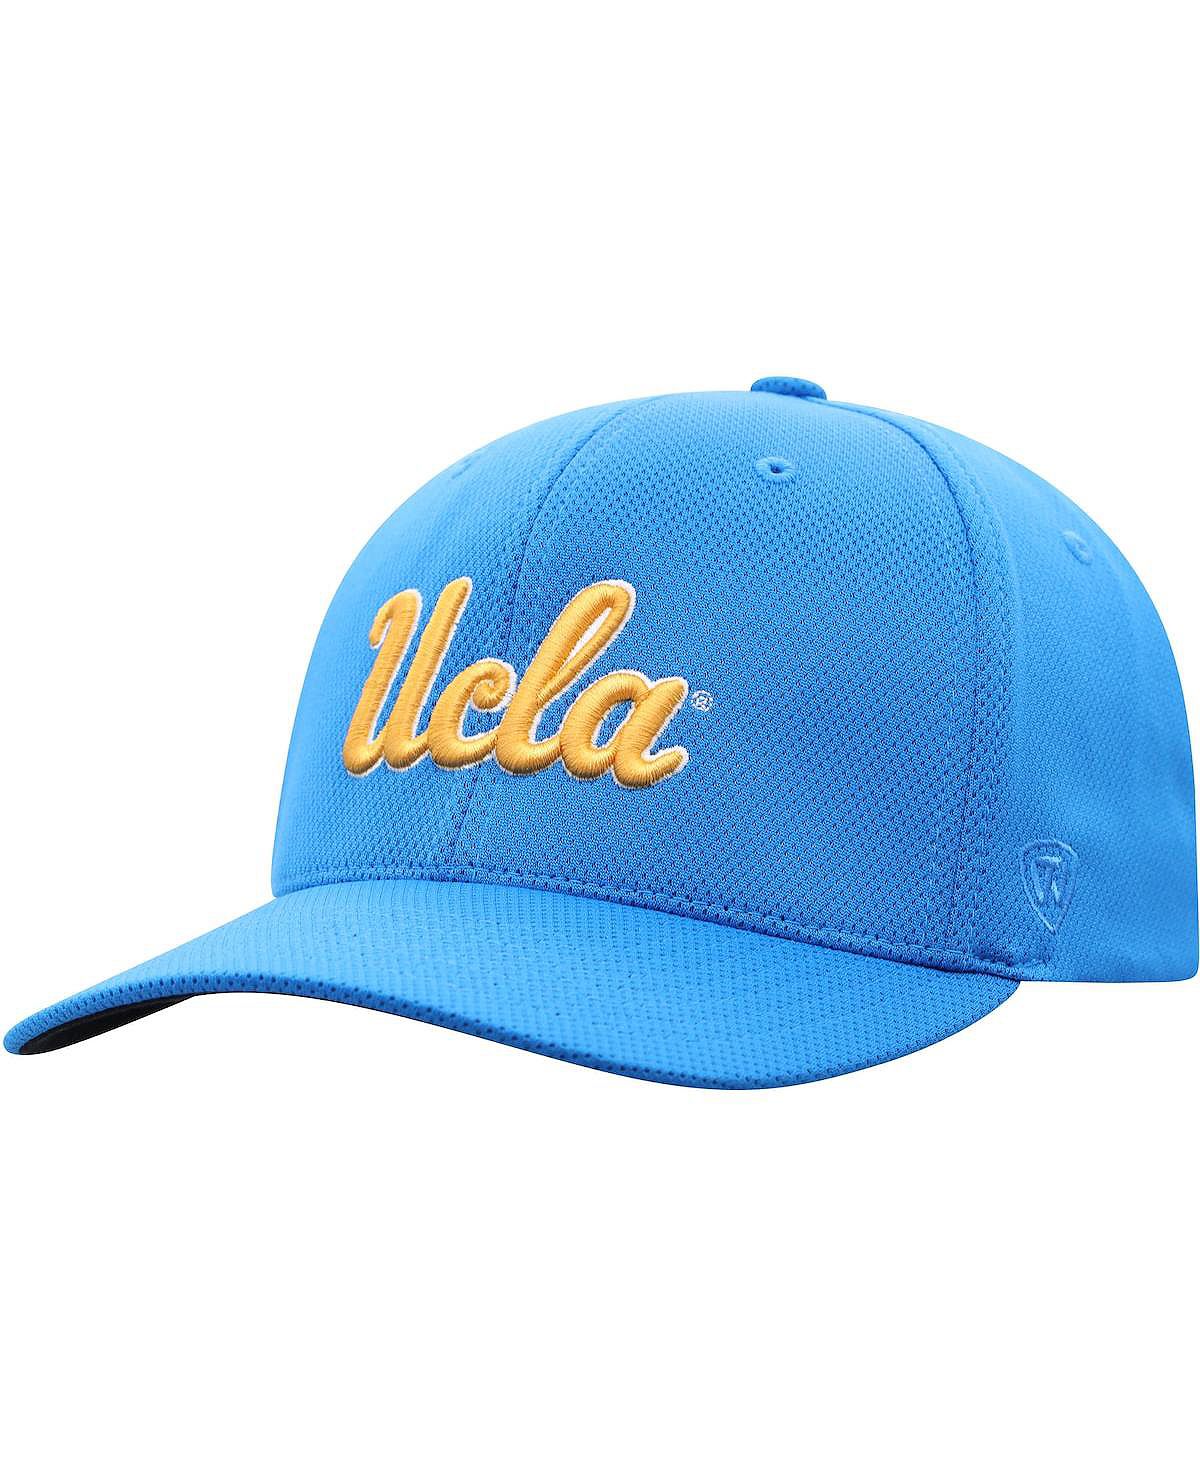 Мужская синяя кепка с логотипом Ucla Bruins Reflex Top of the World